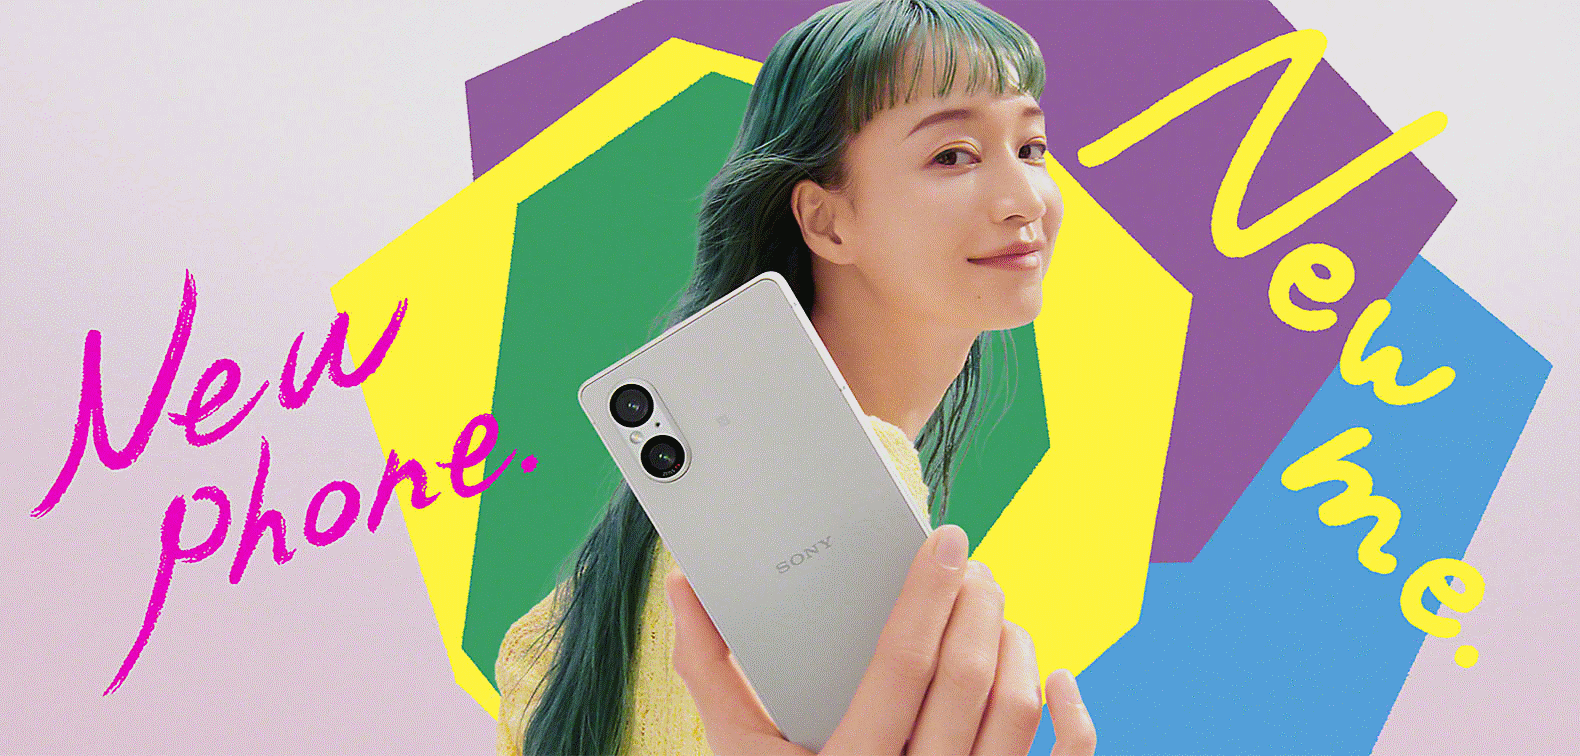 Billede af en person med en Xperia-telefon på en lyserød baggrund med farverige former og teksten "Ny telefon. Ny mig."